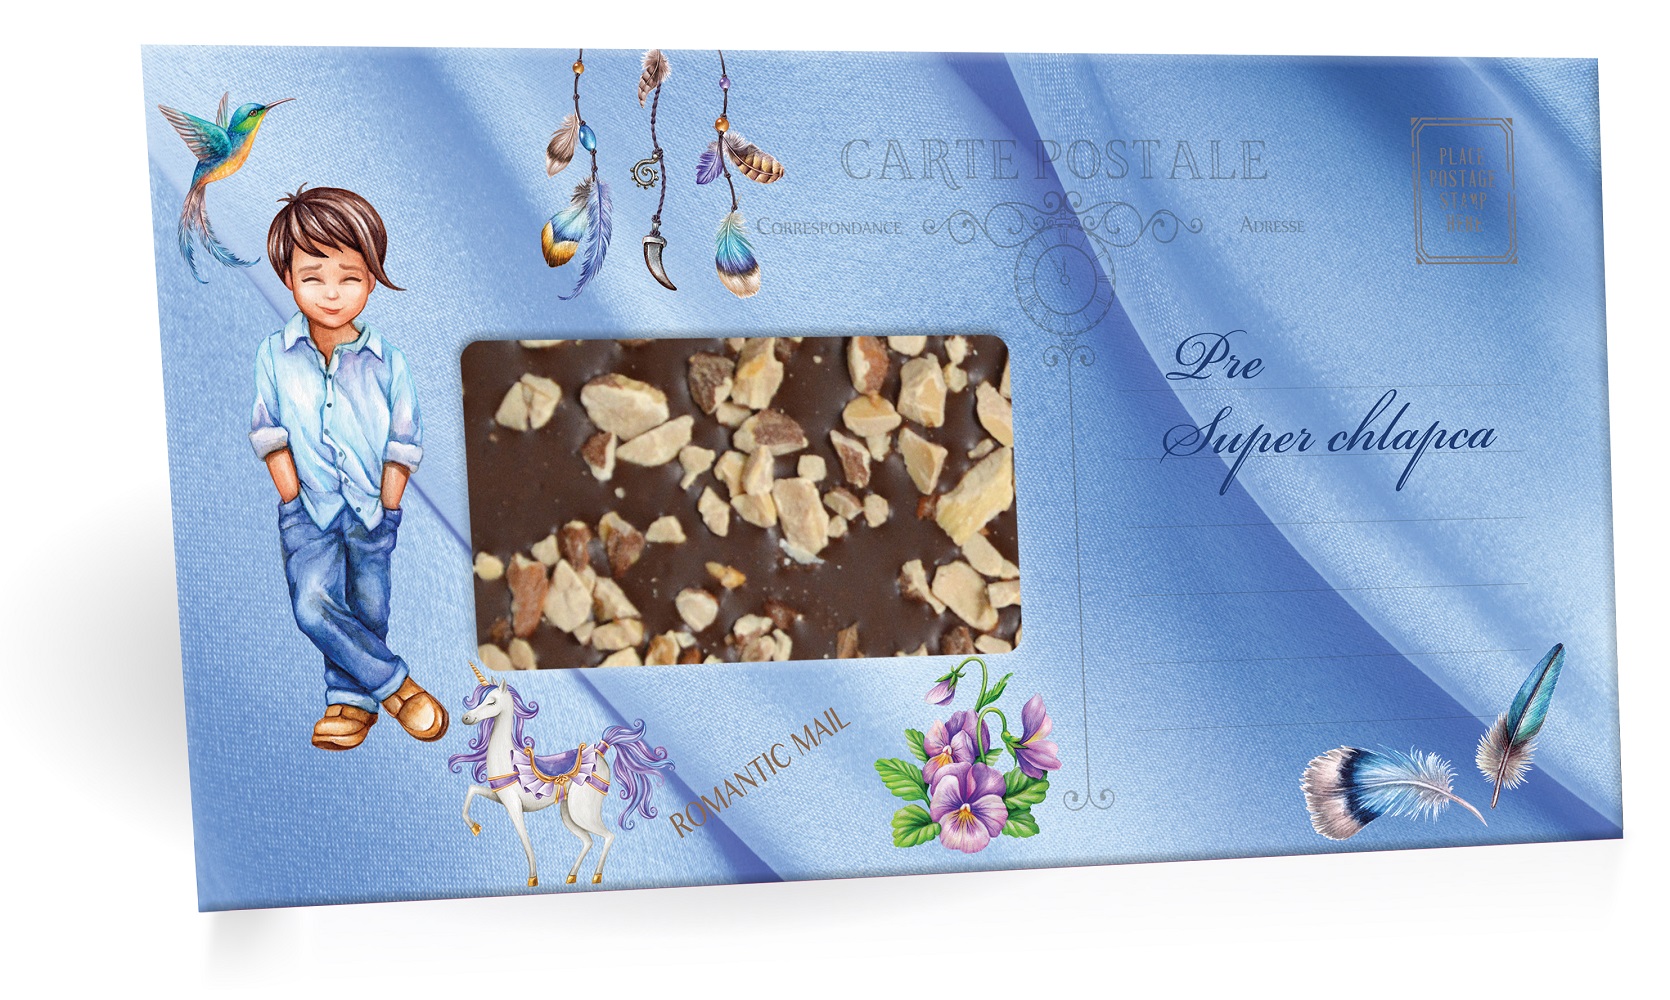 Pre super chlapca - Mliečná čokoláda s posypom mandle 100g SLOVENSKY